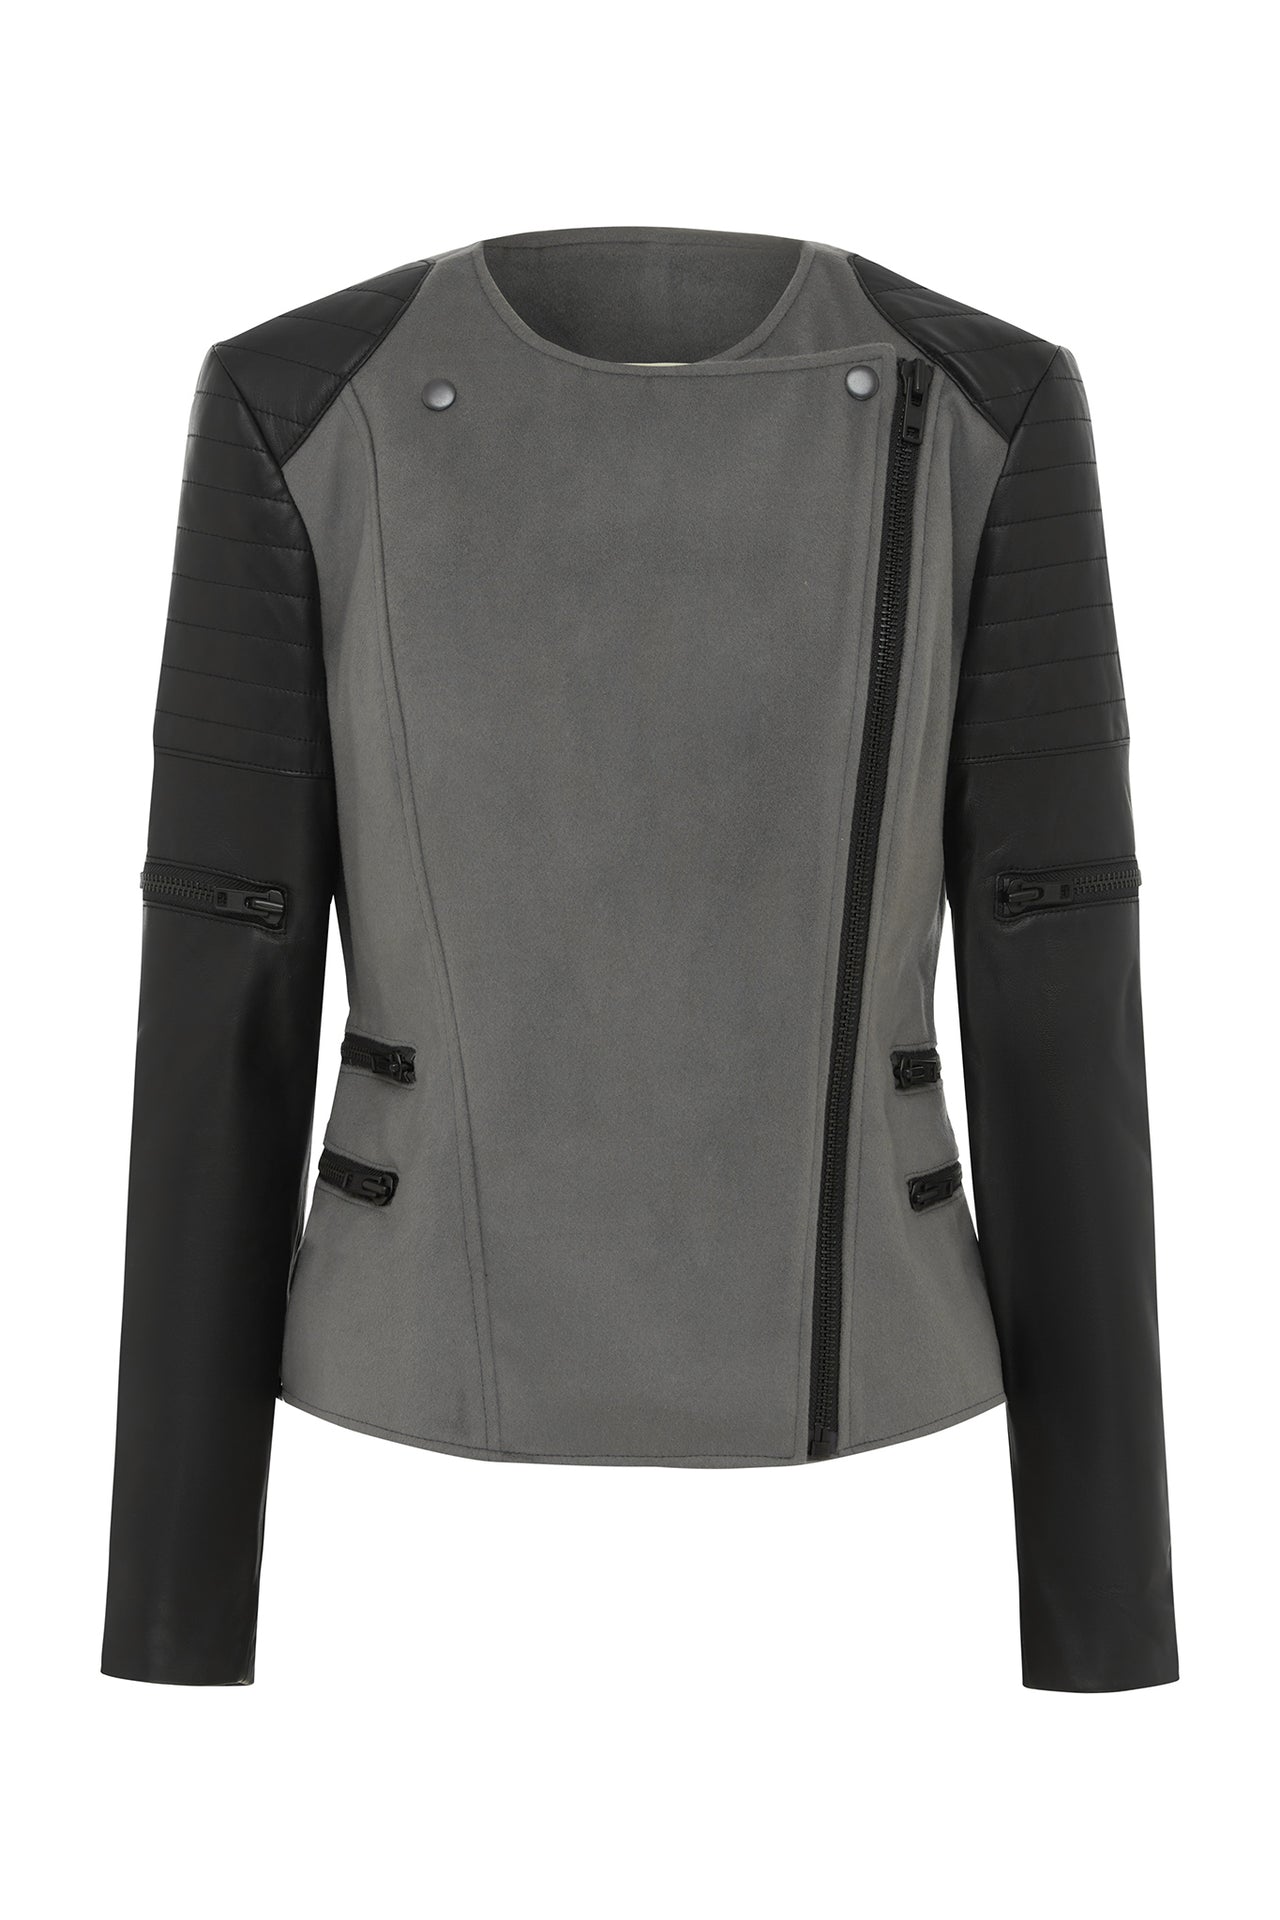 Greenwich St Motor Jacket in Grey Wool & Black Leather